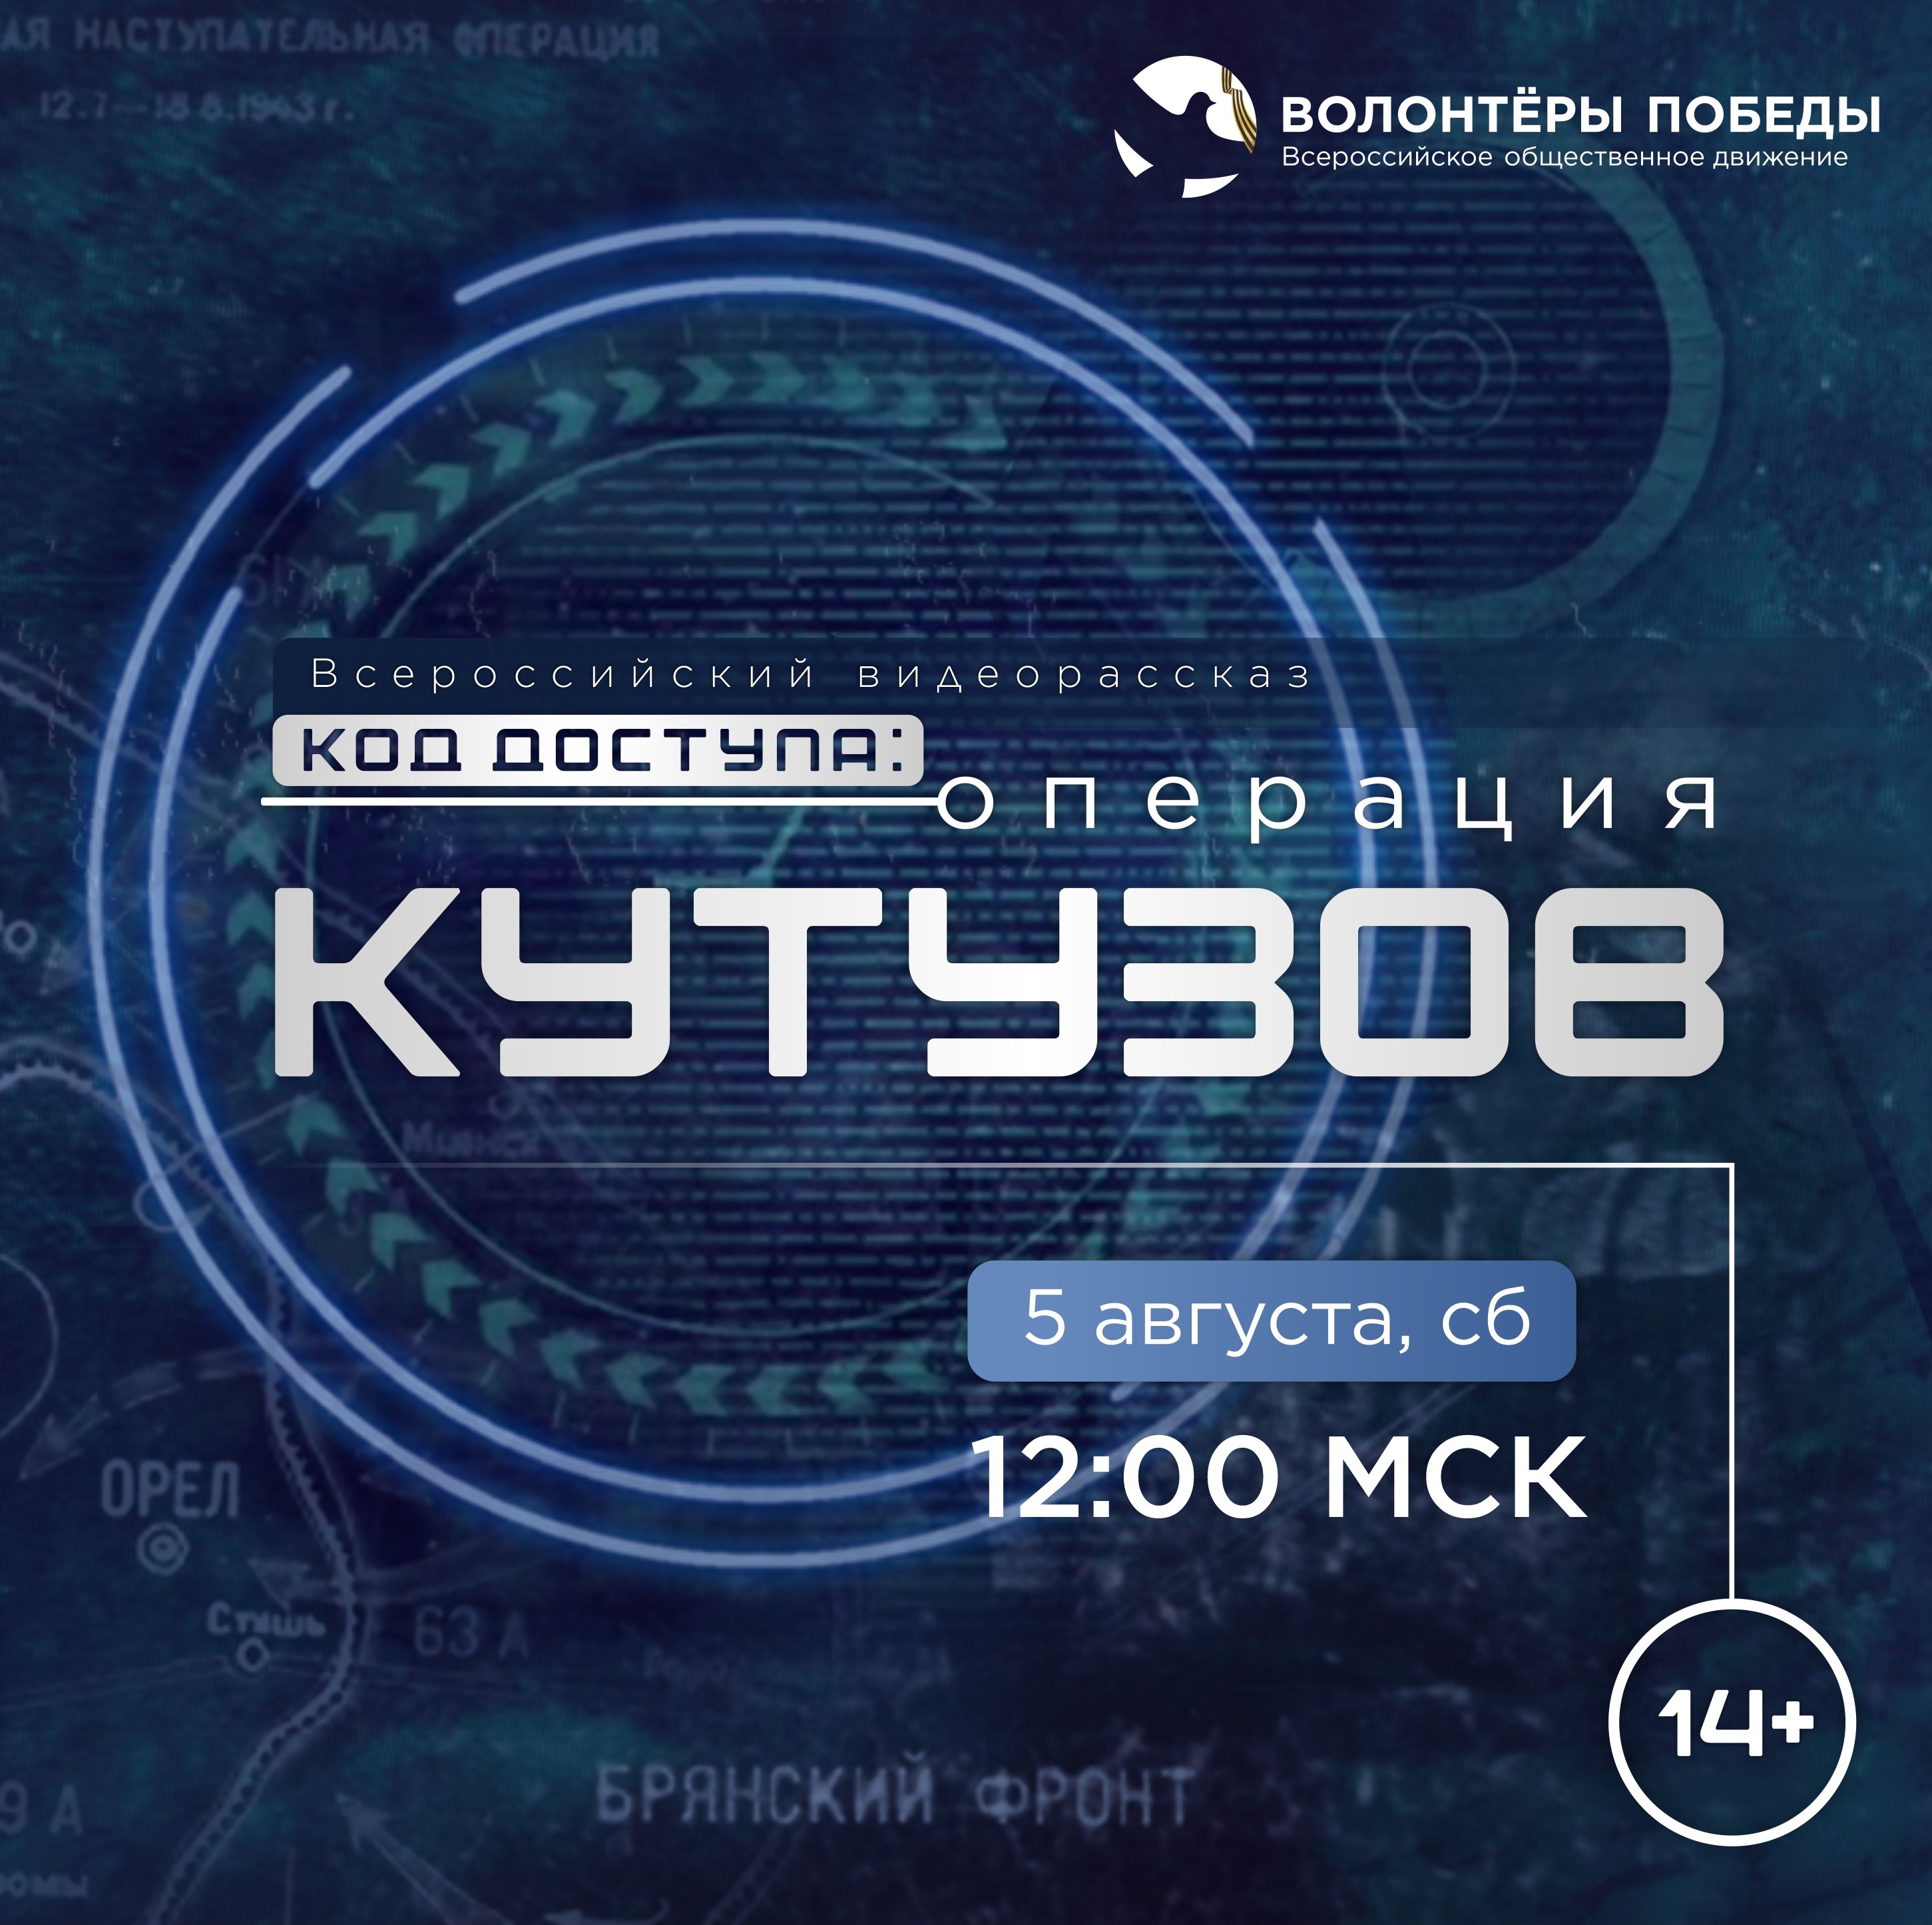 Всероссийский видеорассказ «Код доступа: Операция «Кутузов».